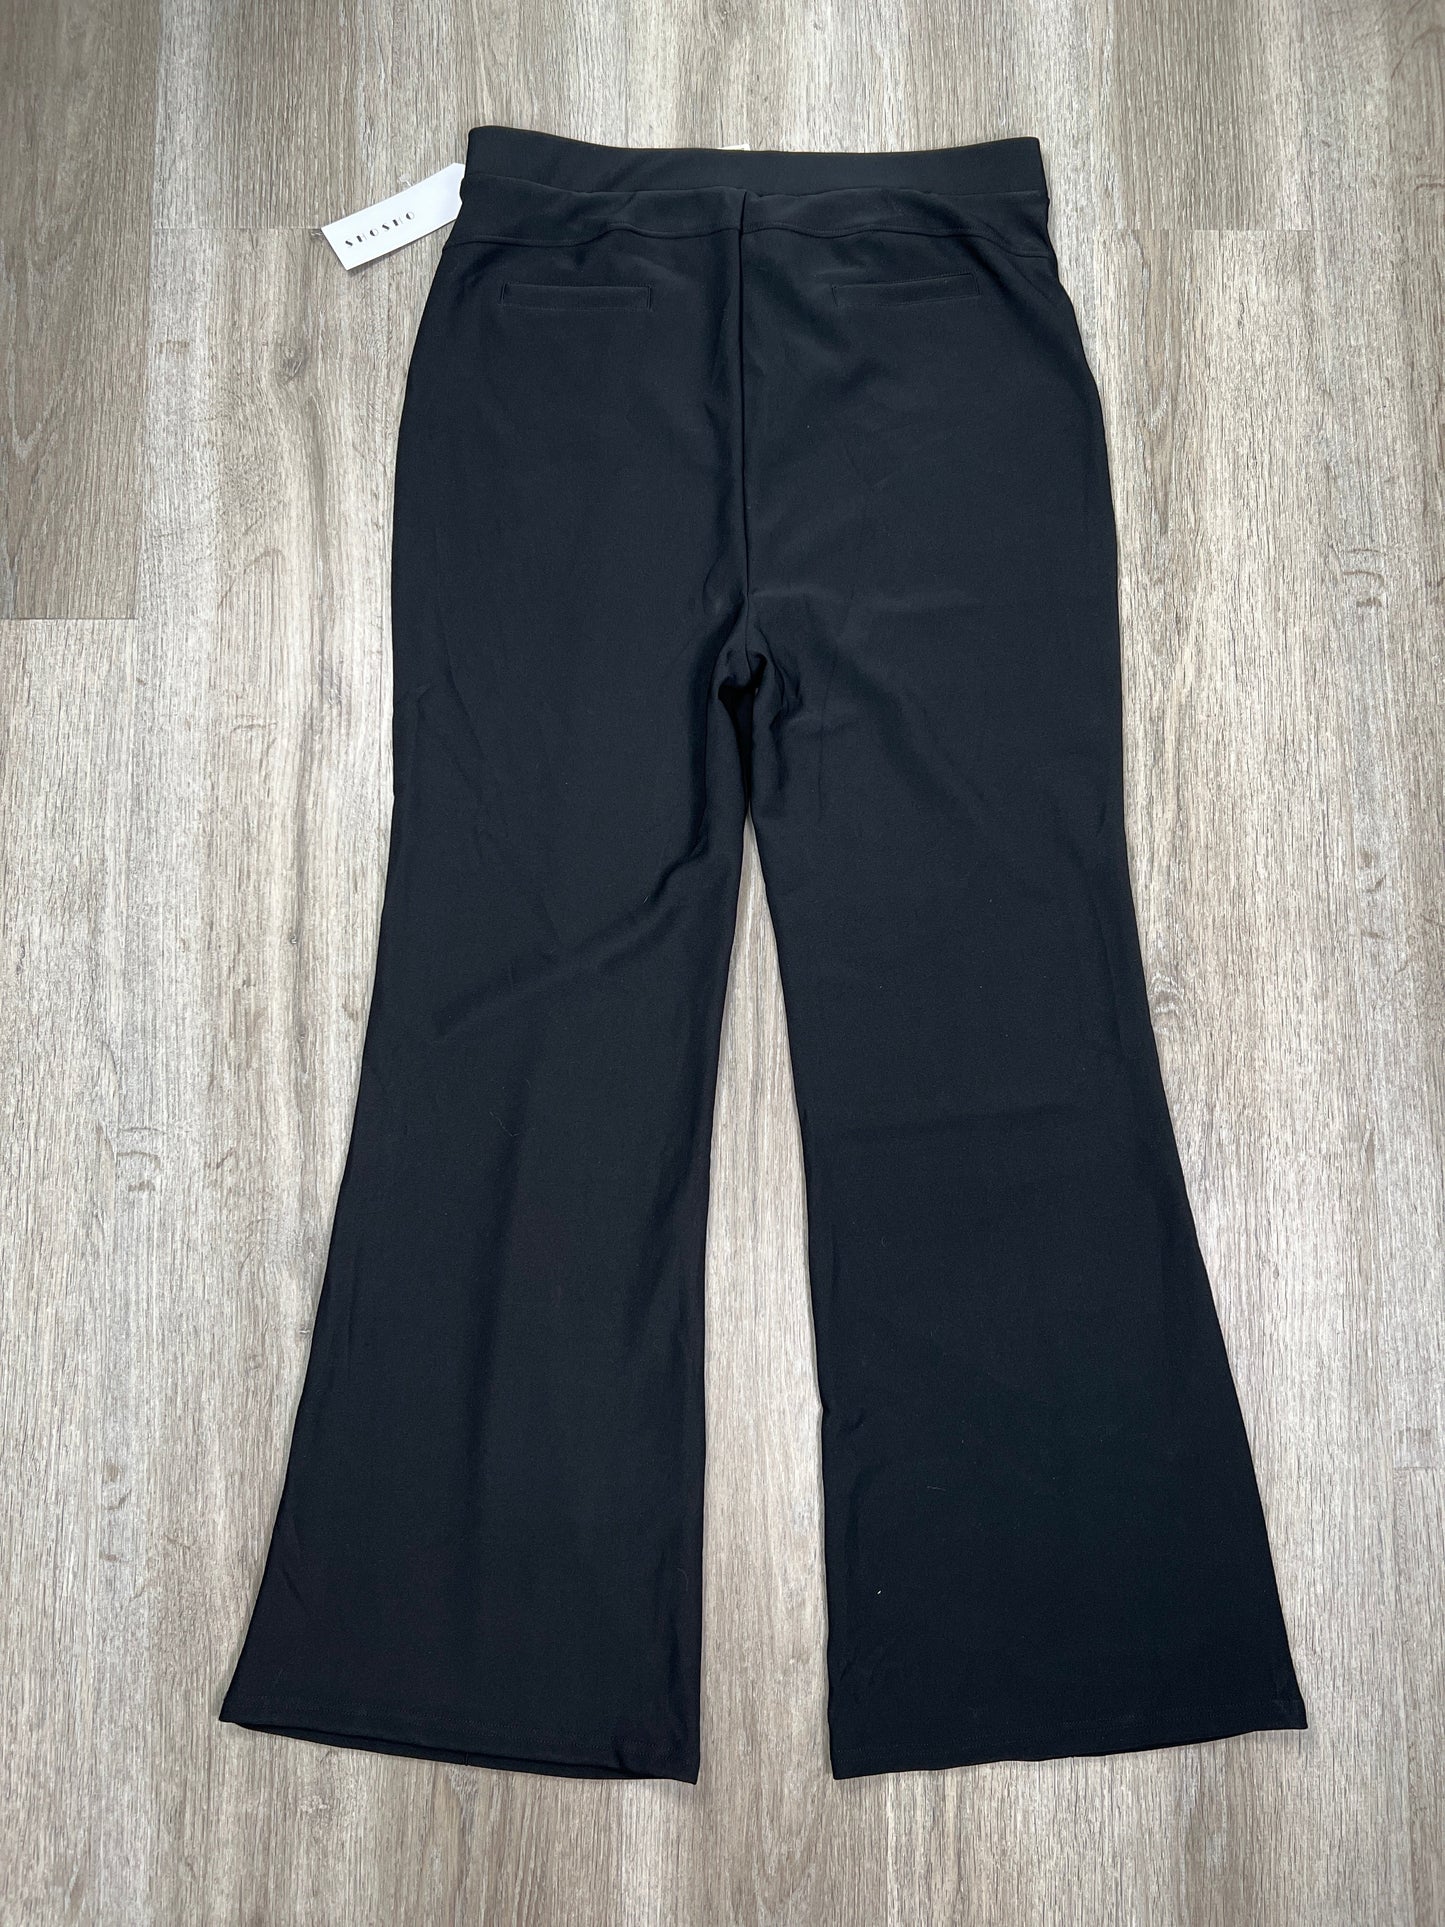 Black Pants Dress SHOSHO, Size 3x